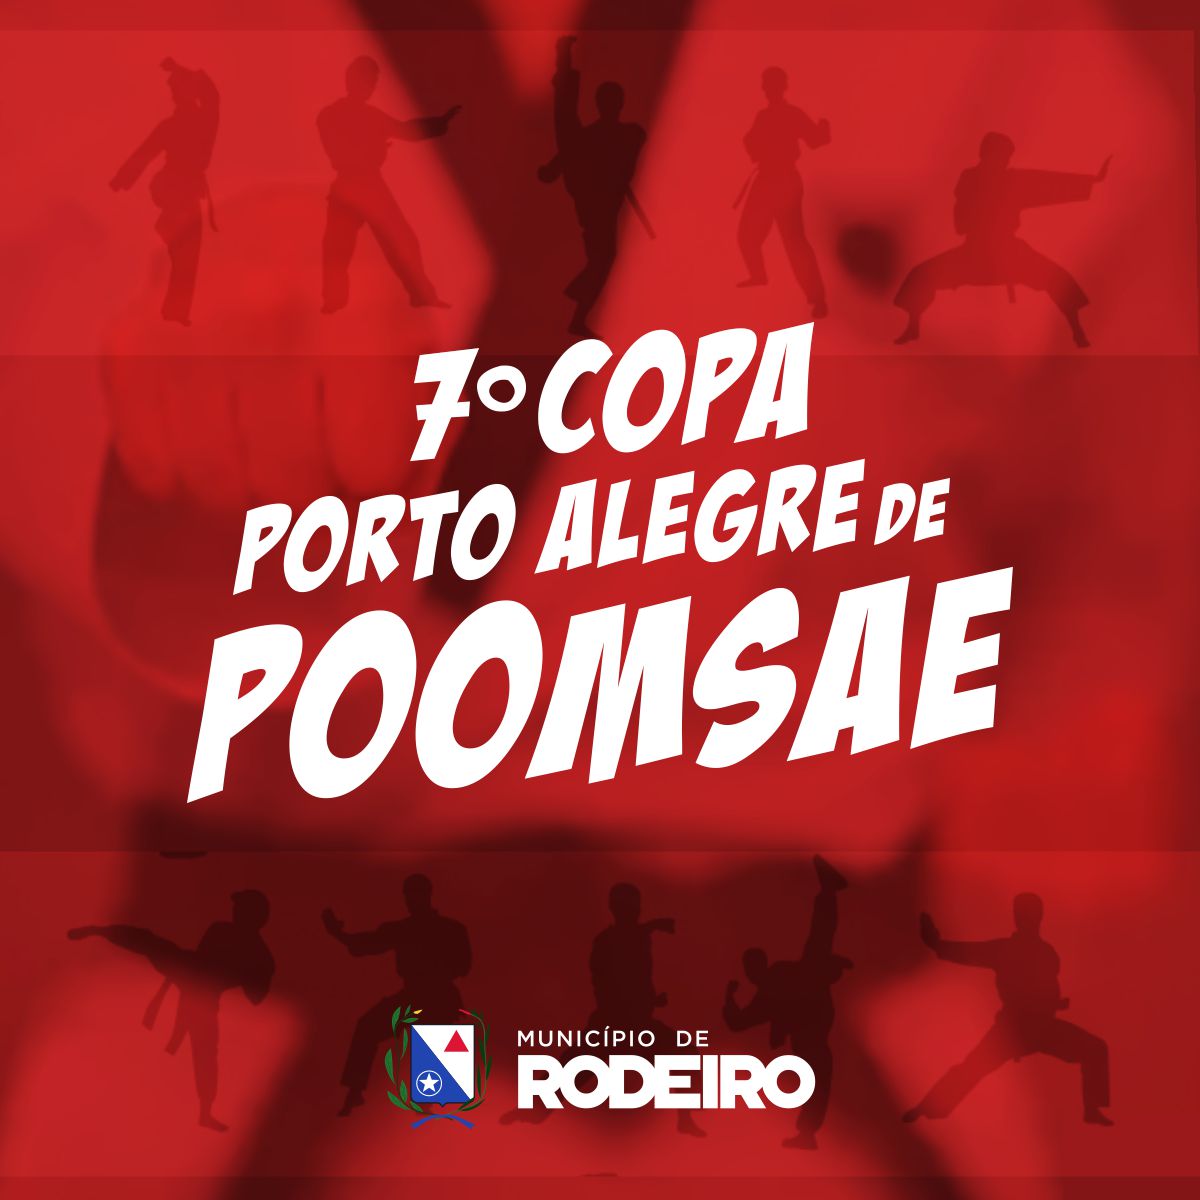 Atletas de Rodeiro conquistam medalhas de Ouro, Prata e Bronze na 7ª Copa Porto Alegre de Poomsae